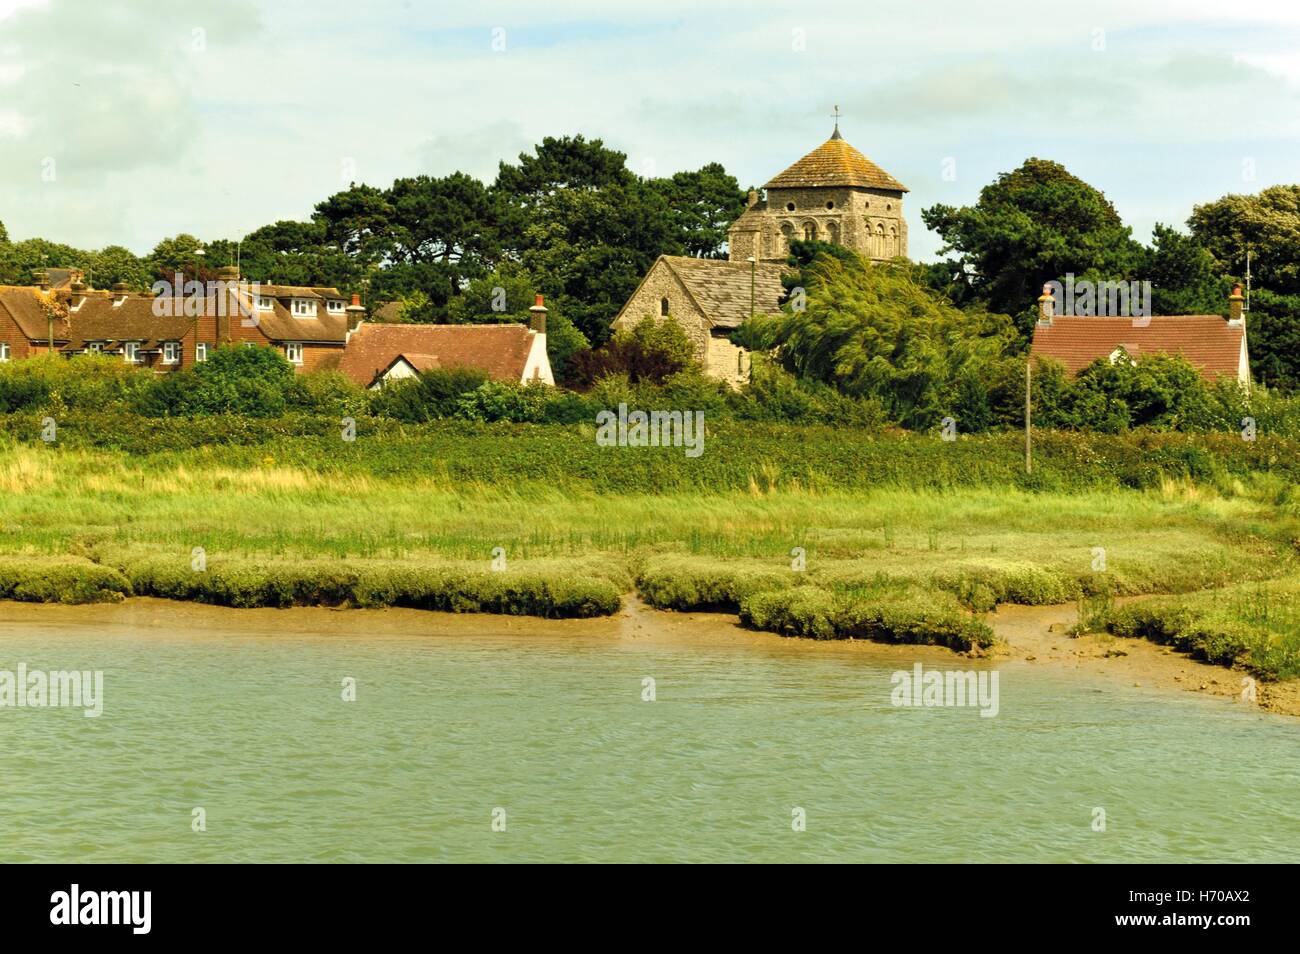 La vue sur la rivière Adur près de Shoreham-by-Sea, Angleterre Banque D'Images